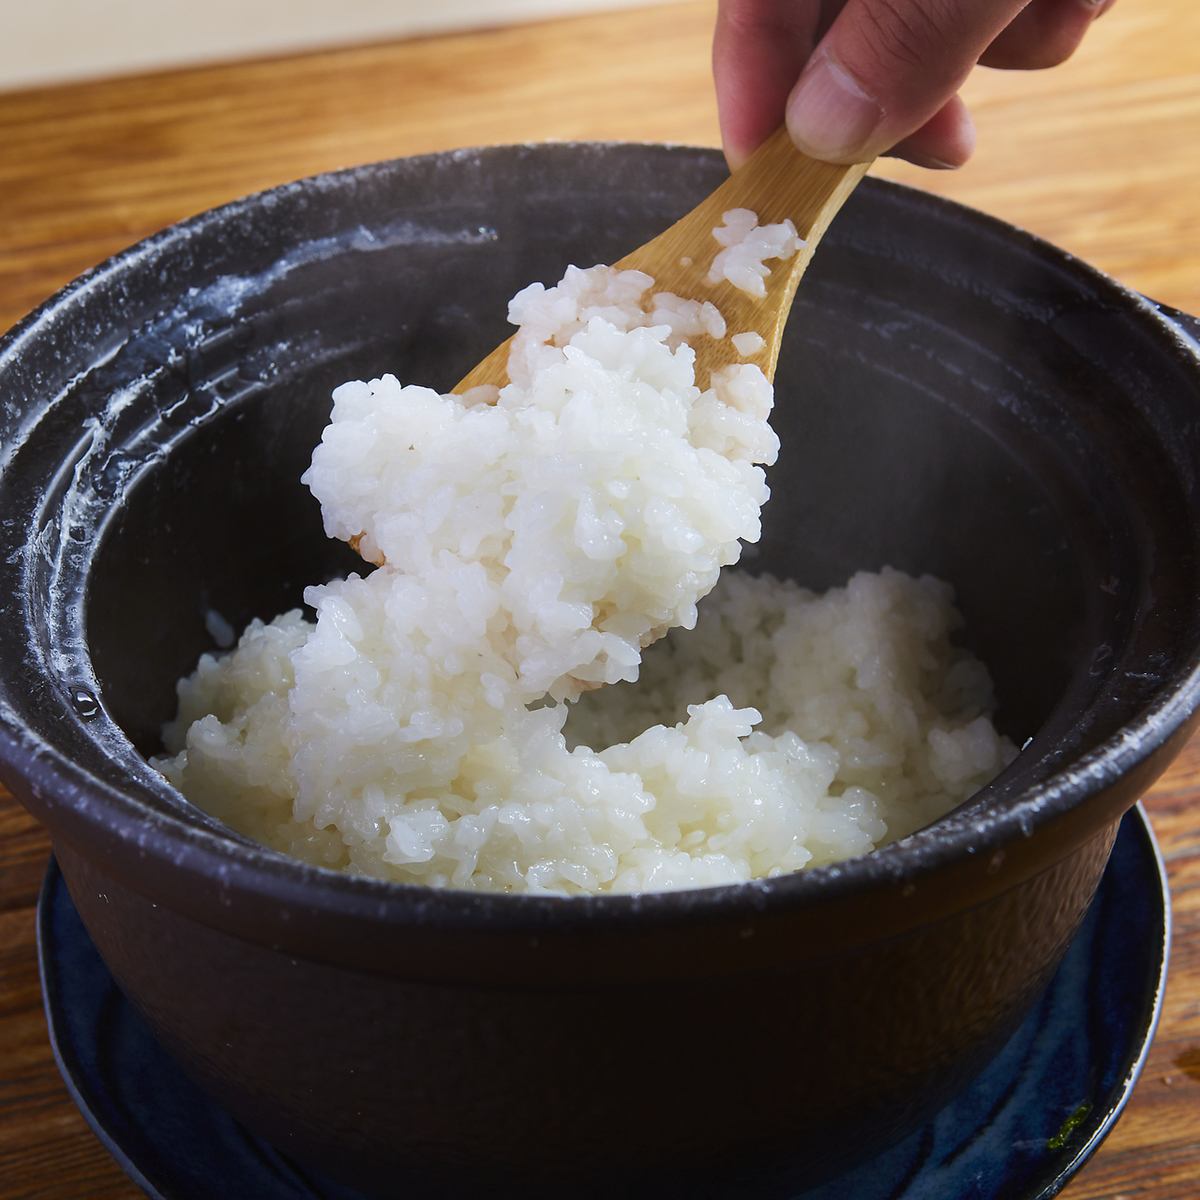 我們講究火候和烹調，以最大限度地發揮米飯的美味。